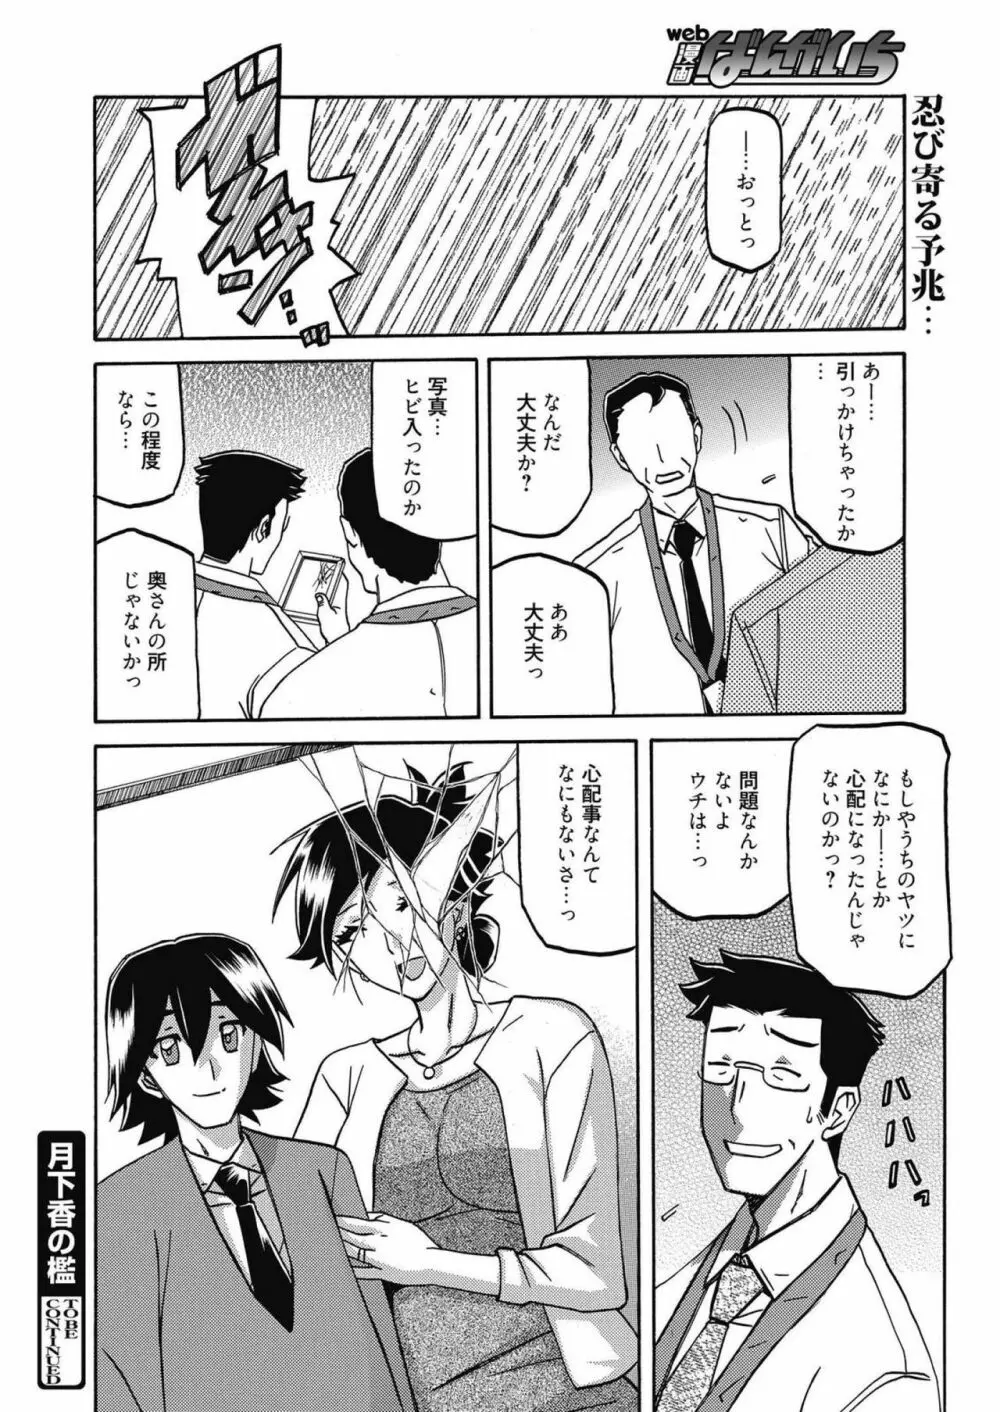 web 漫画ばんがいち Vol.14 208ページ